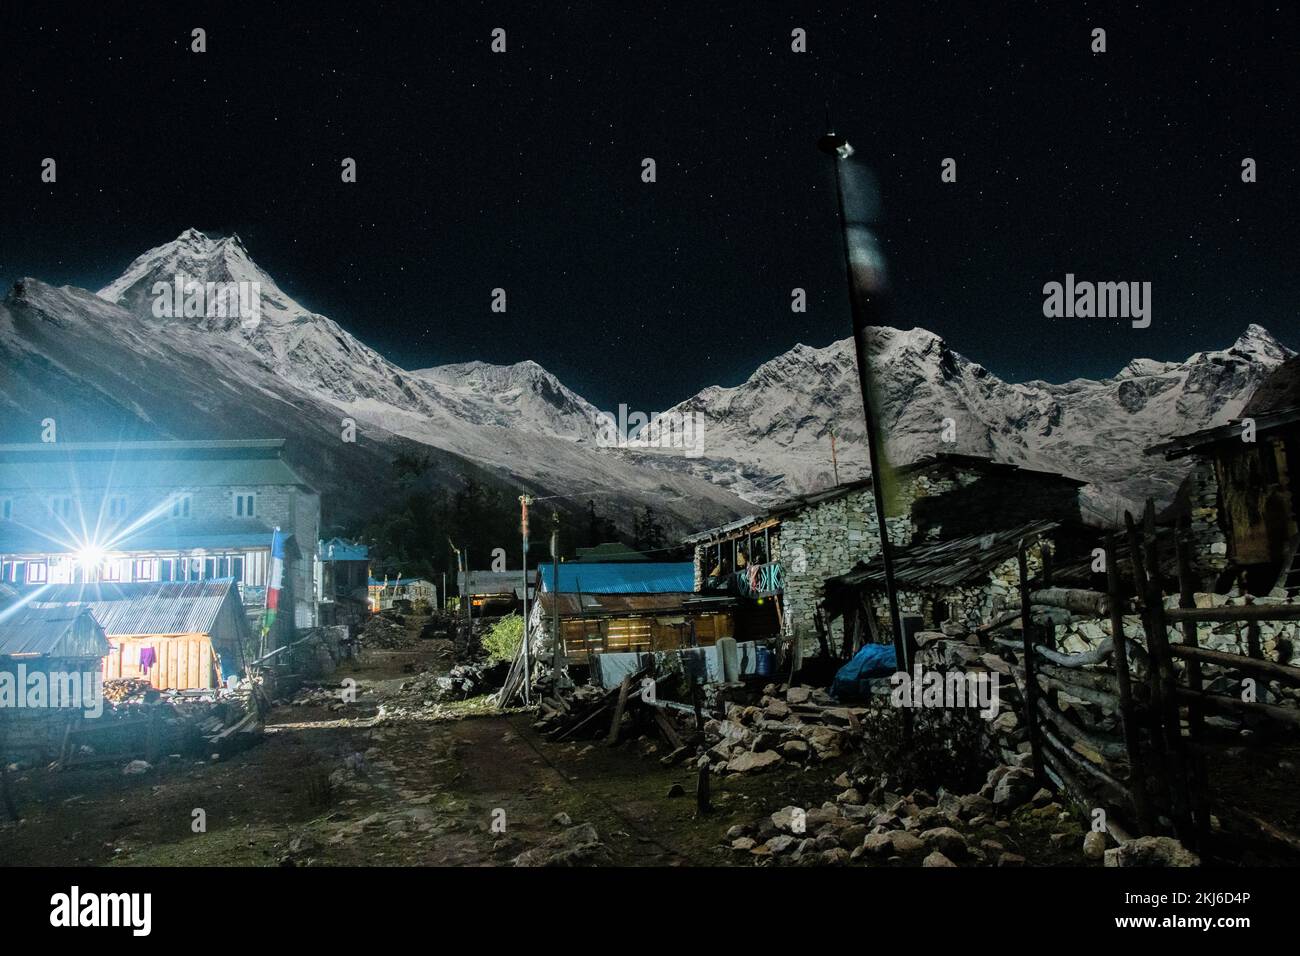 Mount Manaslu and it's Range Night View Shot from Shyala Village during Manaslu Circuit Trek Stock Photo